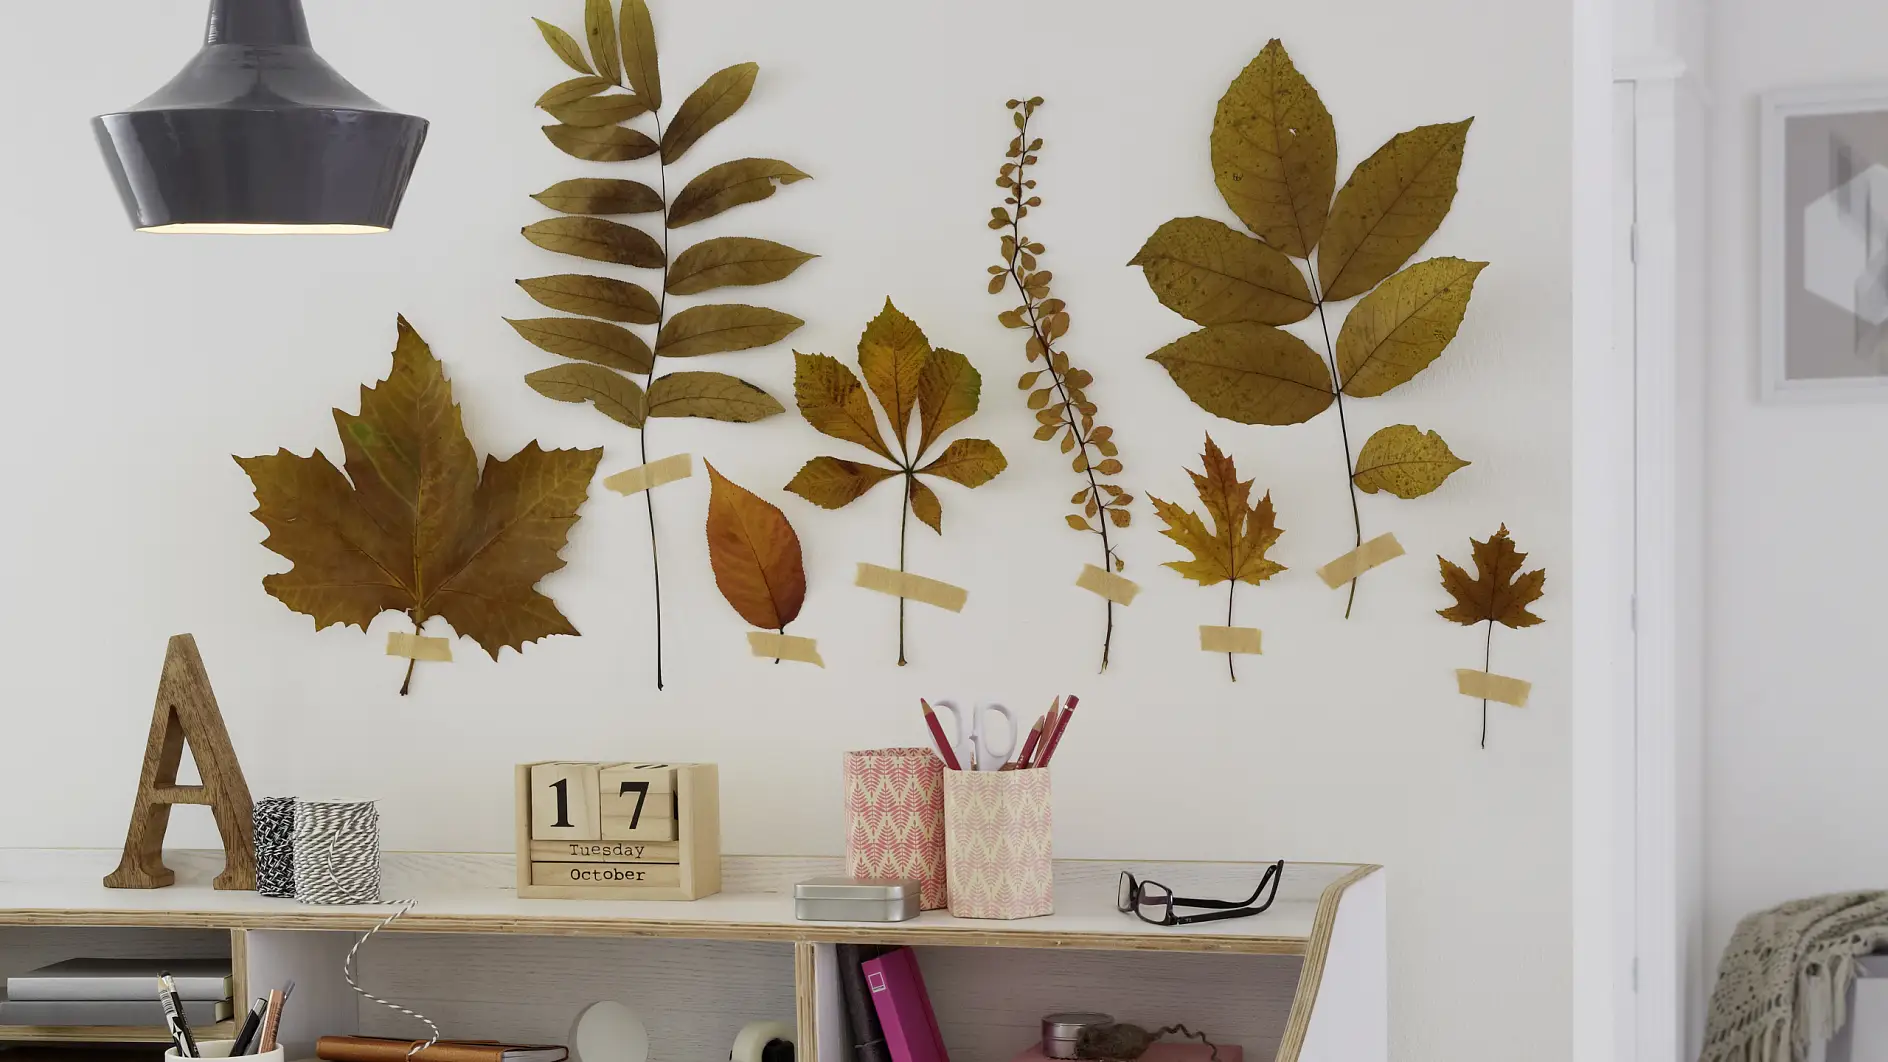 Fastgør bladene direkte på væggen og skab din egen skov!